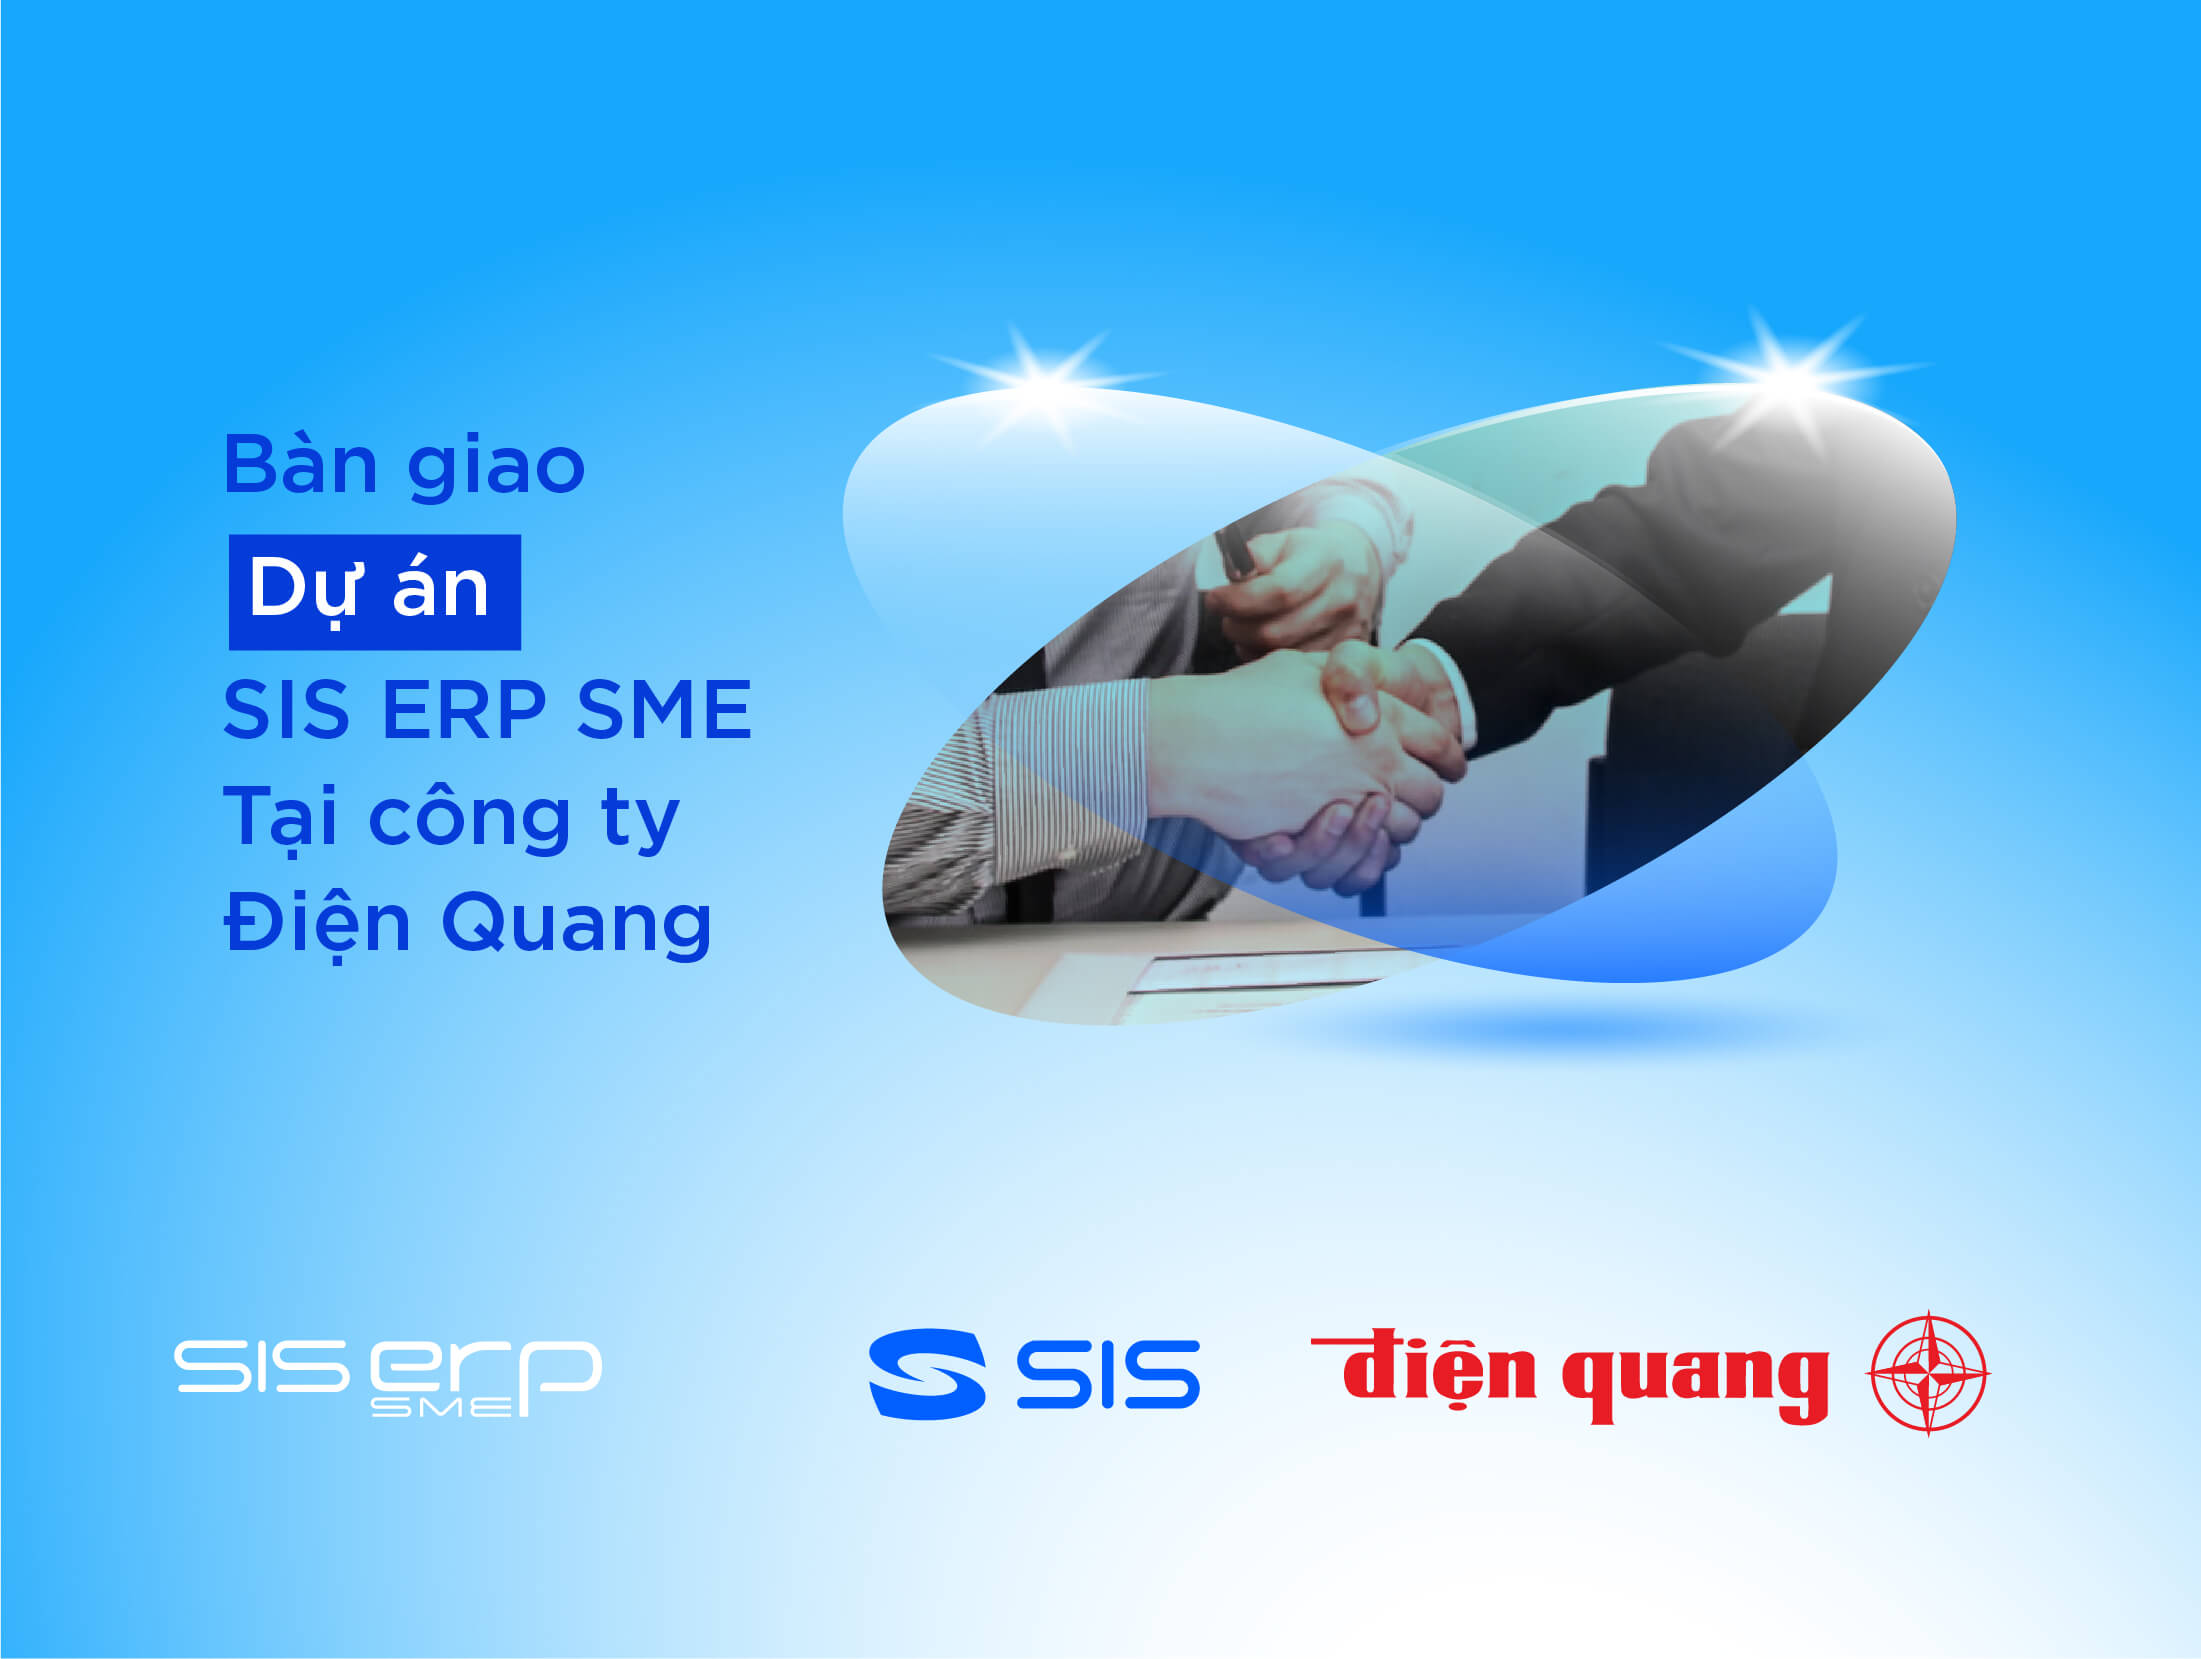 Bàn giao đưa vào sử dụng SIS ERP SME tại công ty Điện Quang